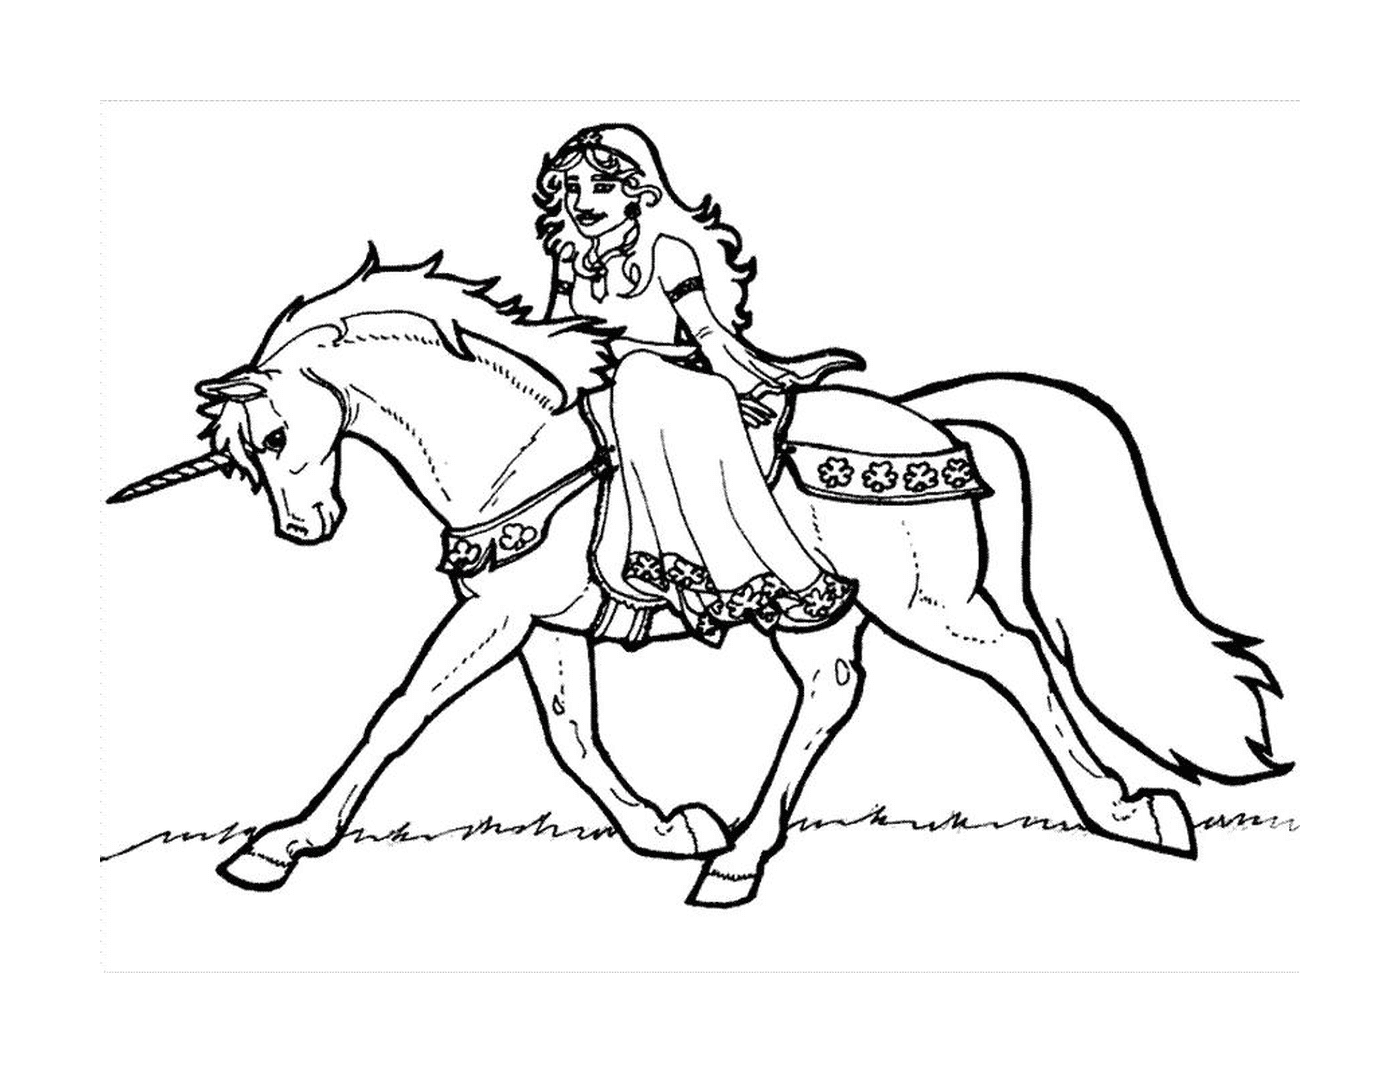  mulher montando um cavalo (desenho) 